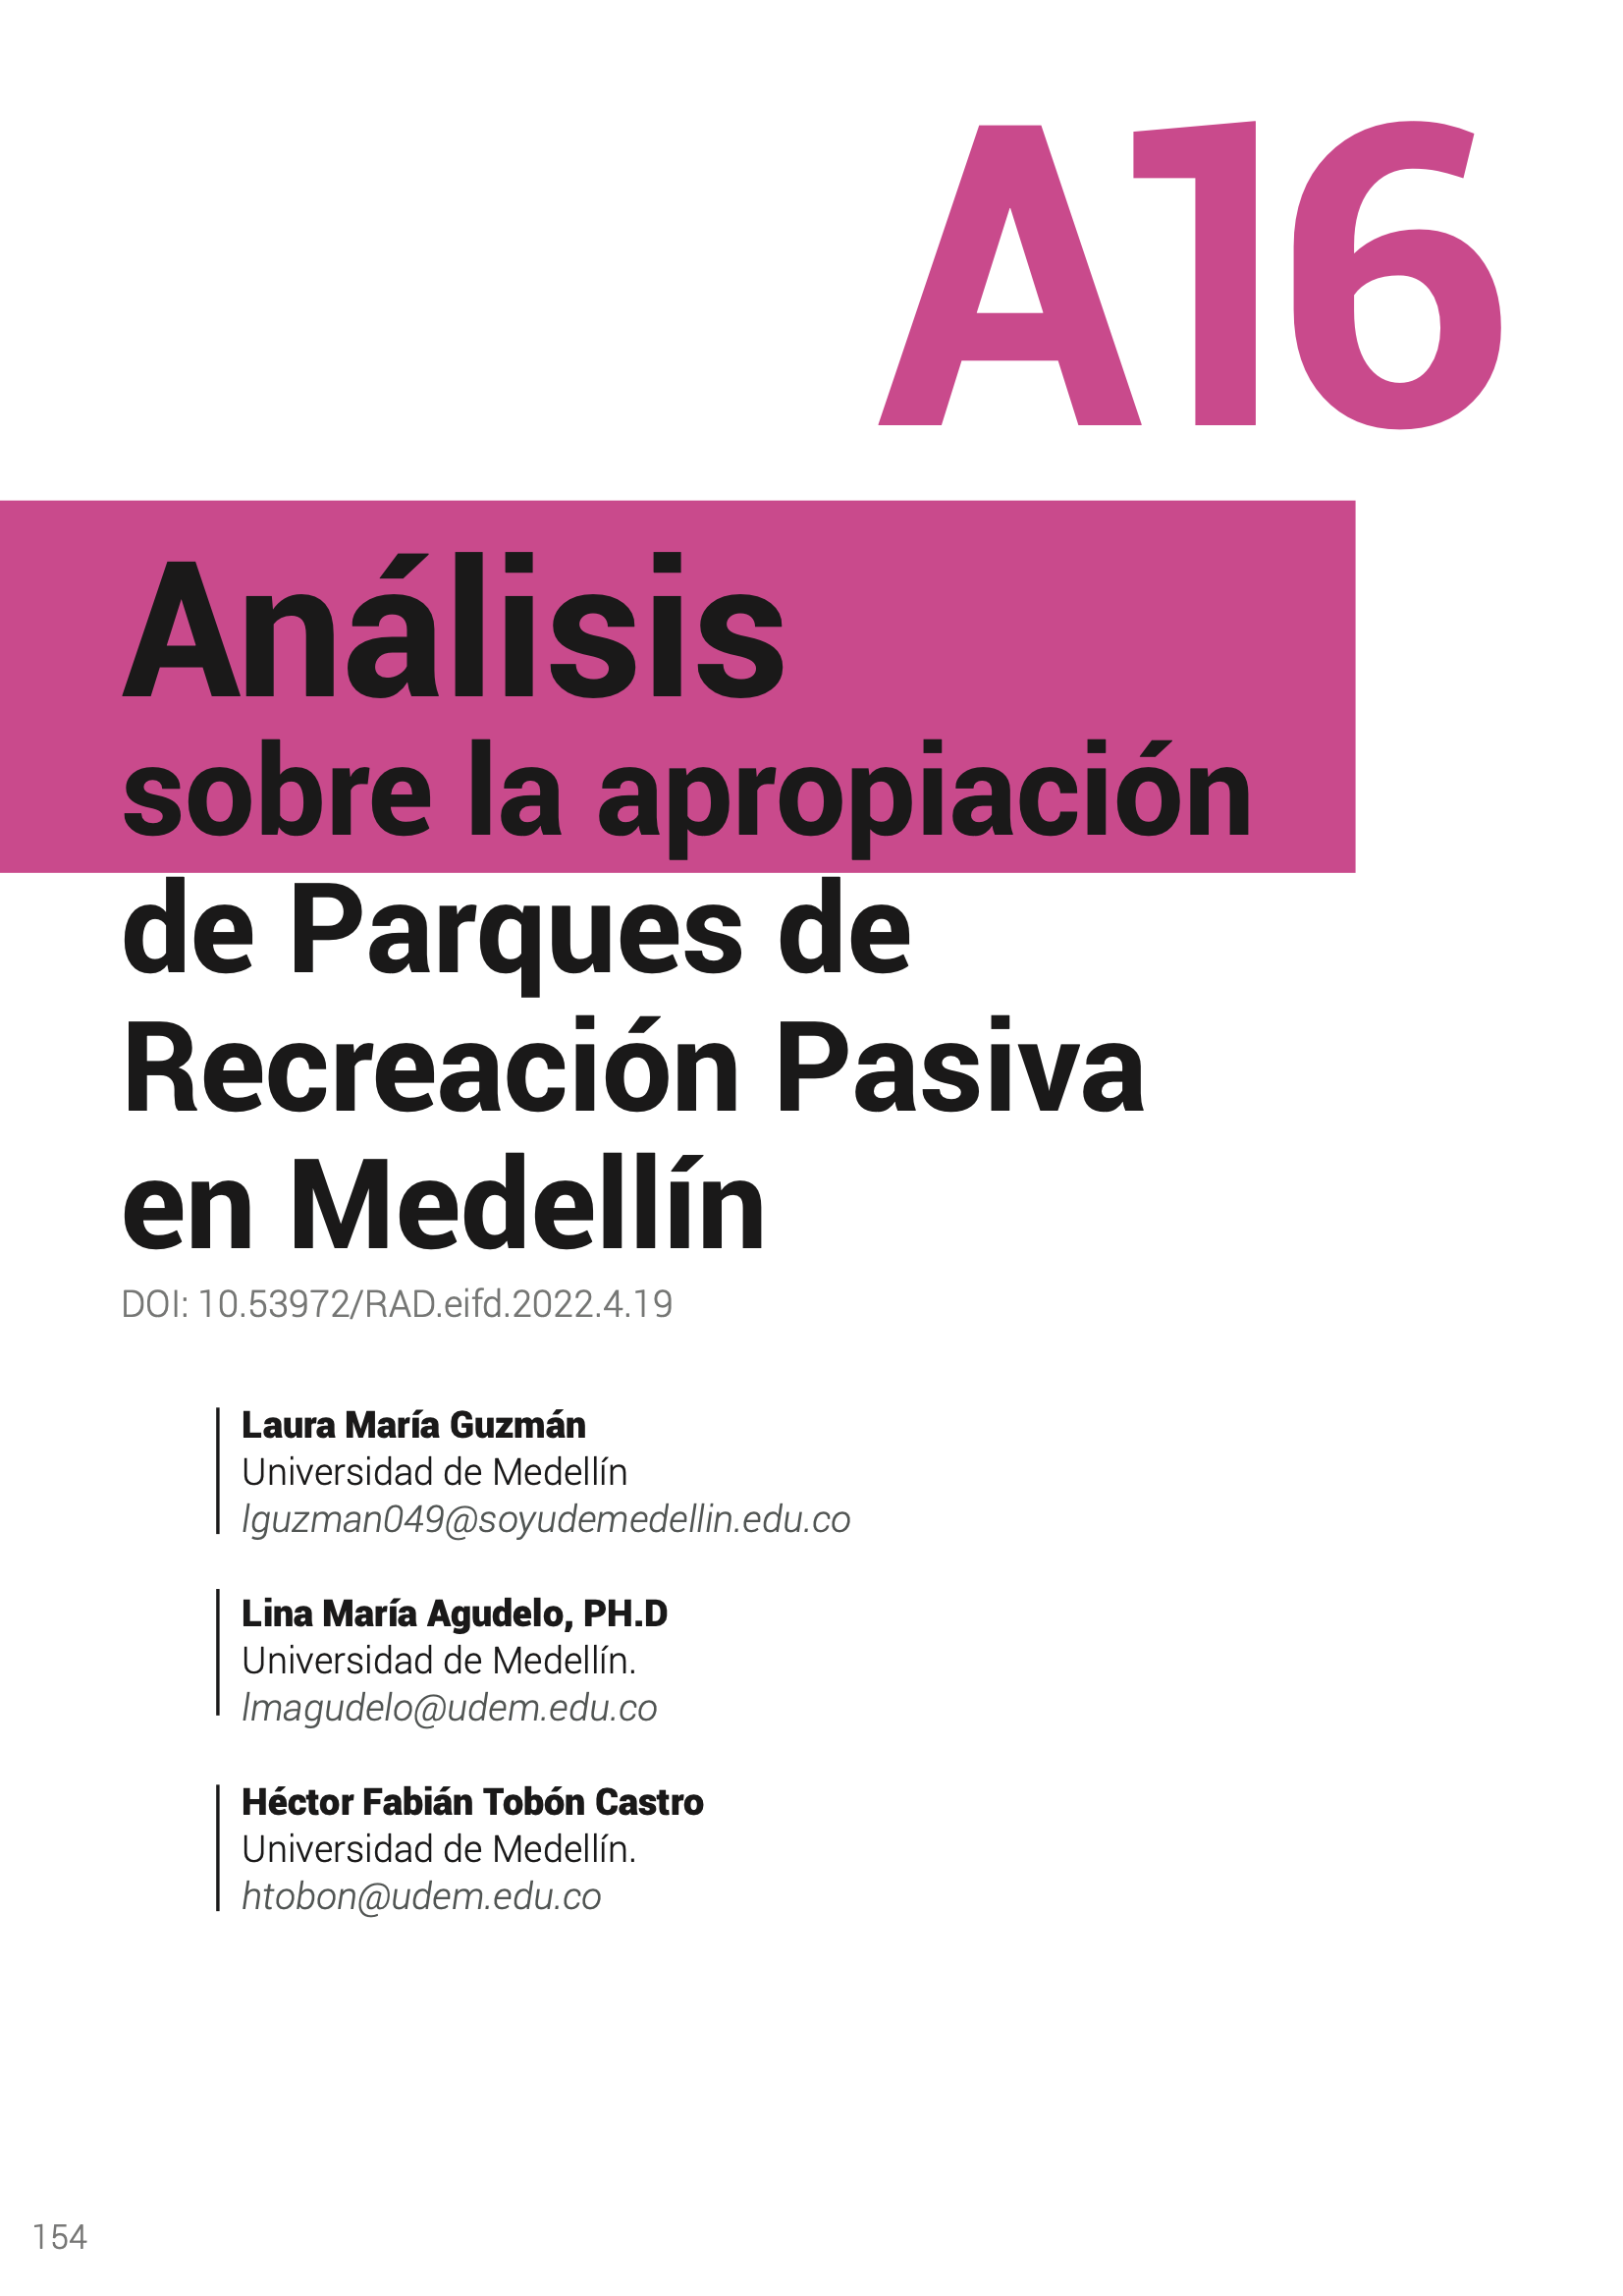 Análisis sobre la apropiación de Parques de Recreación Pasiva en Medellín